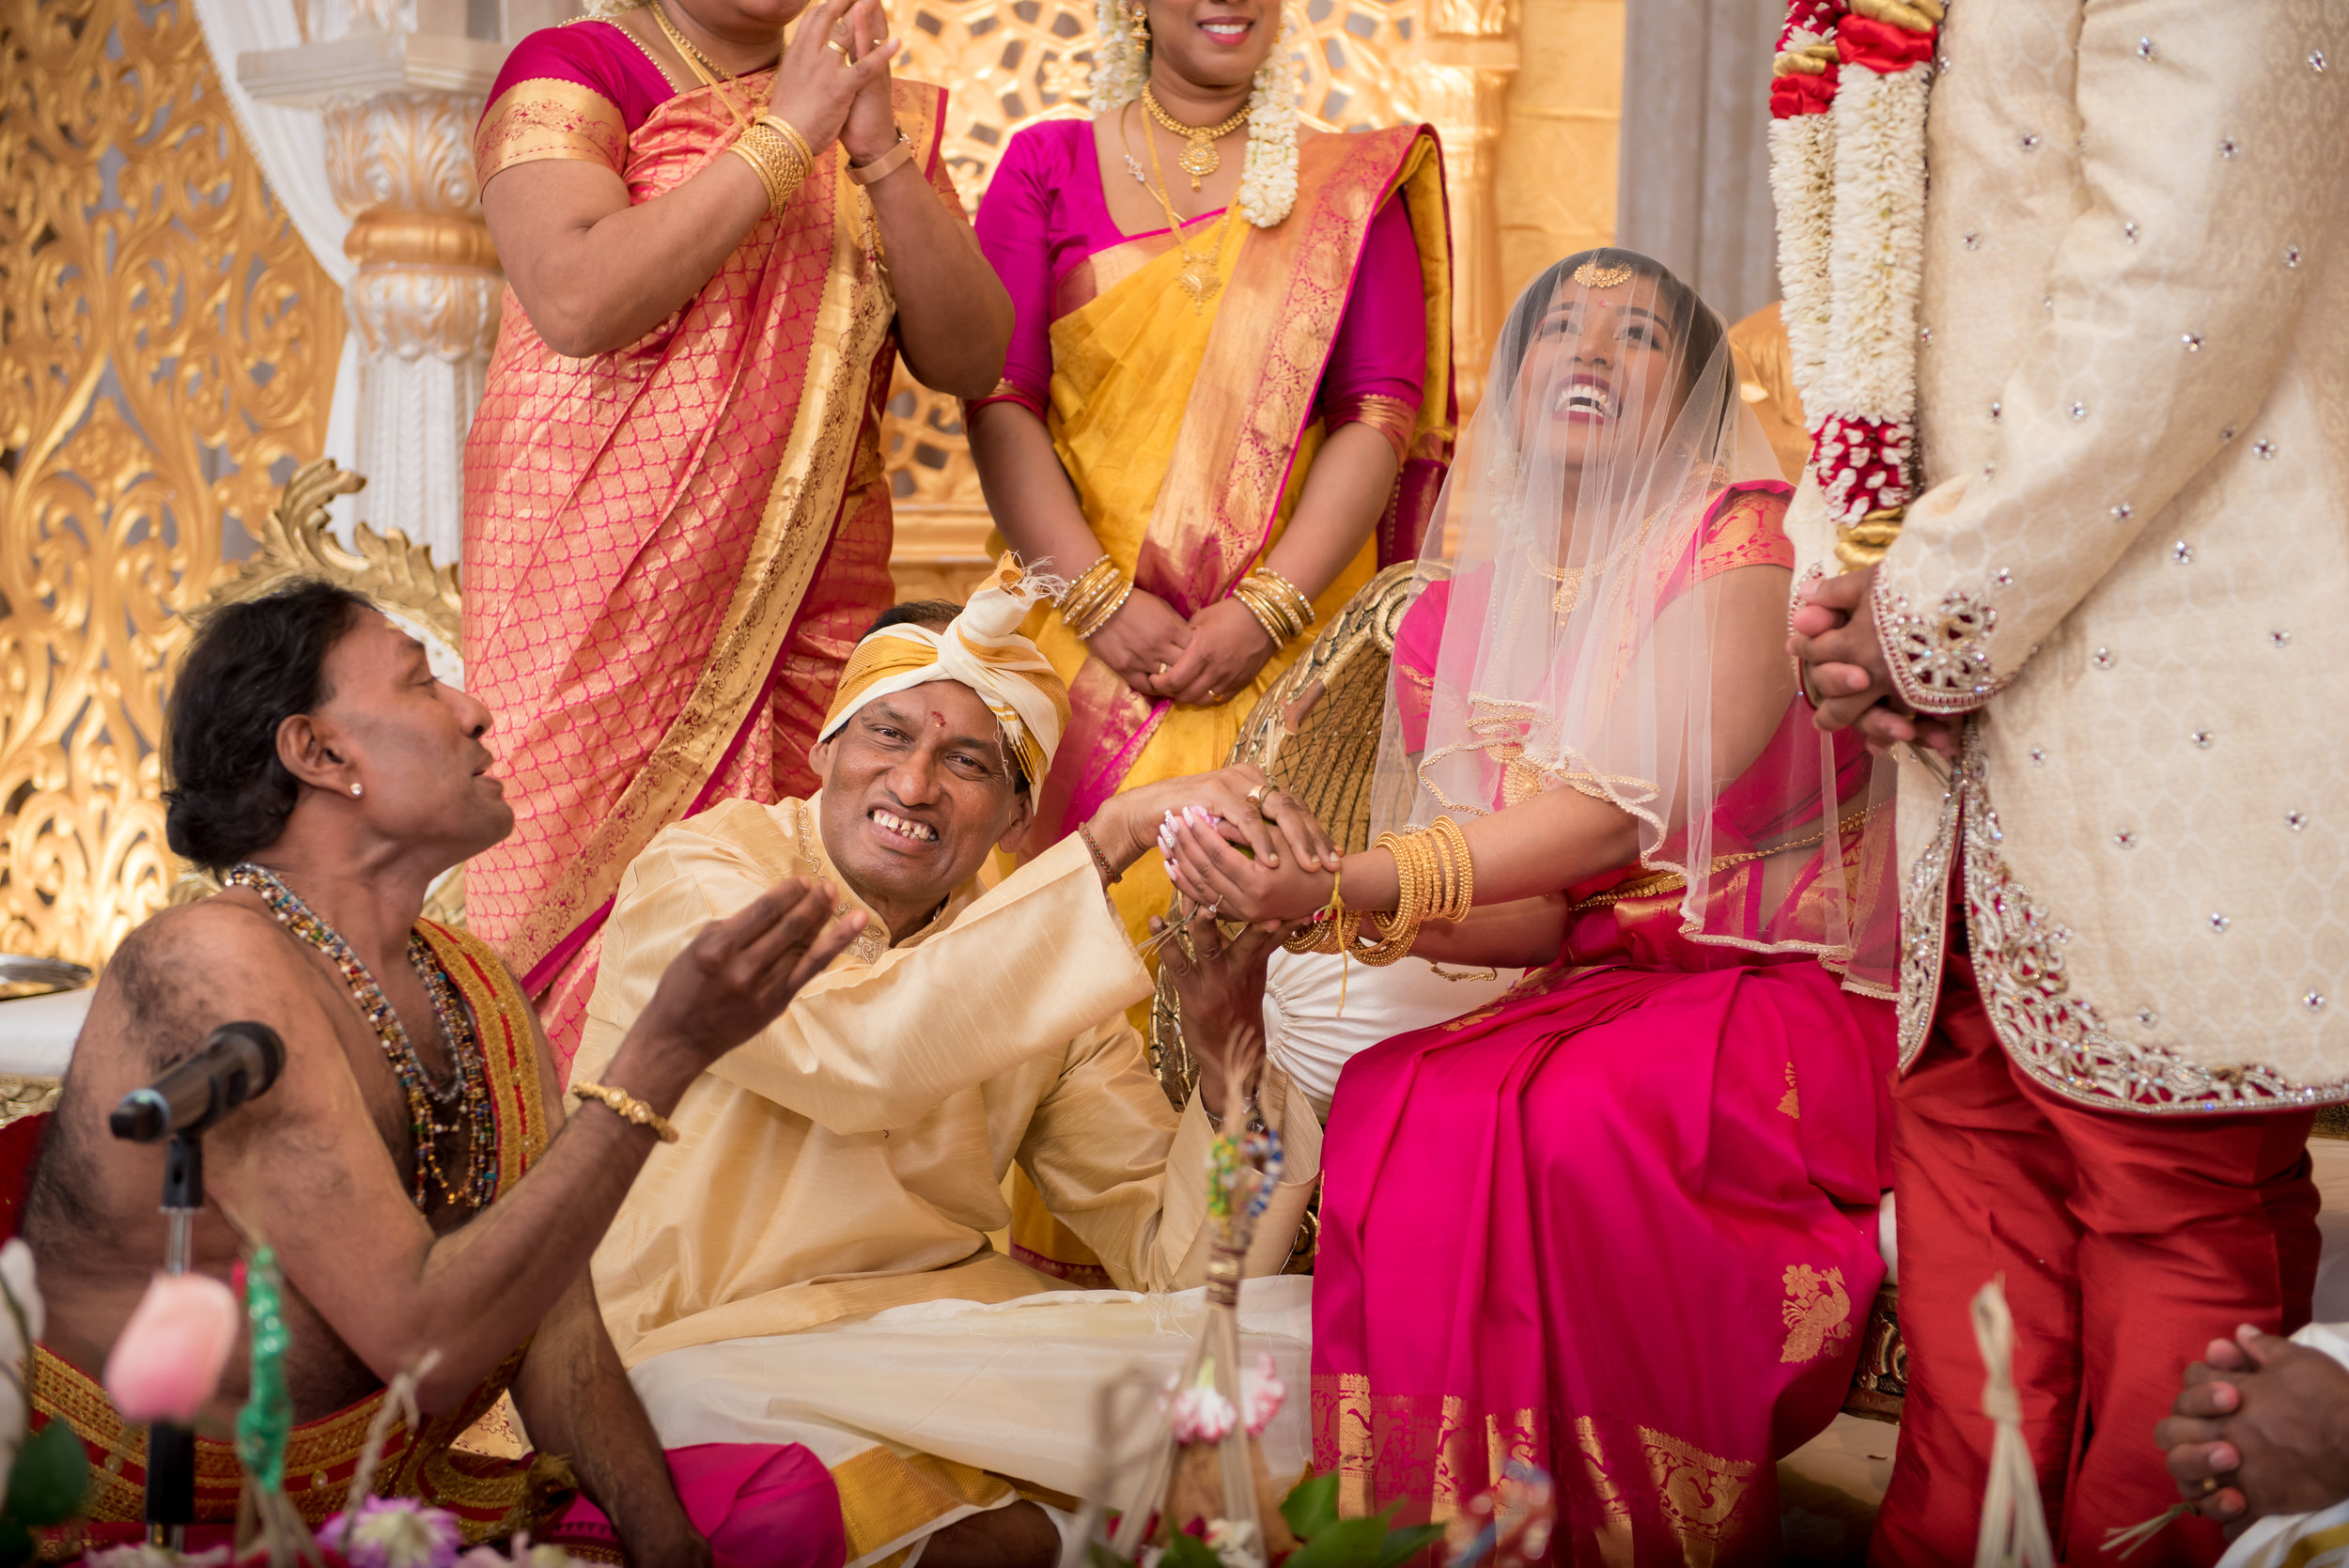 Ajainthi & Sayanthan - Wedding - Edited-415.jpg